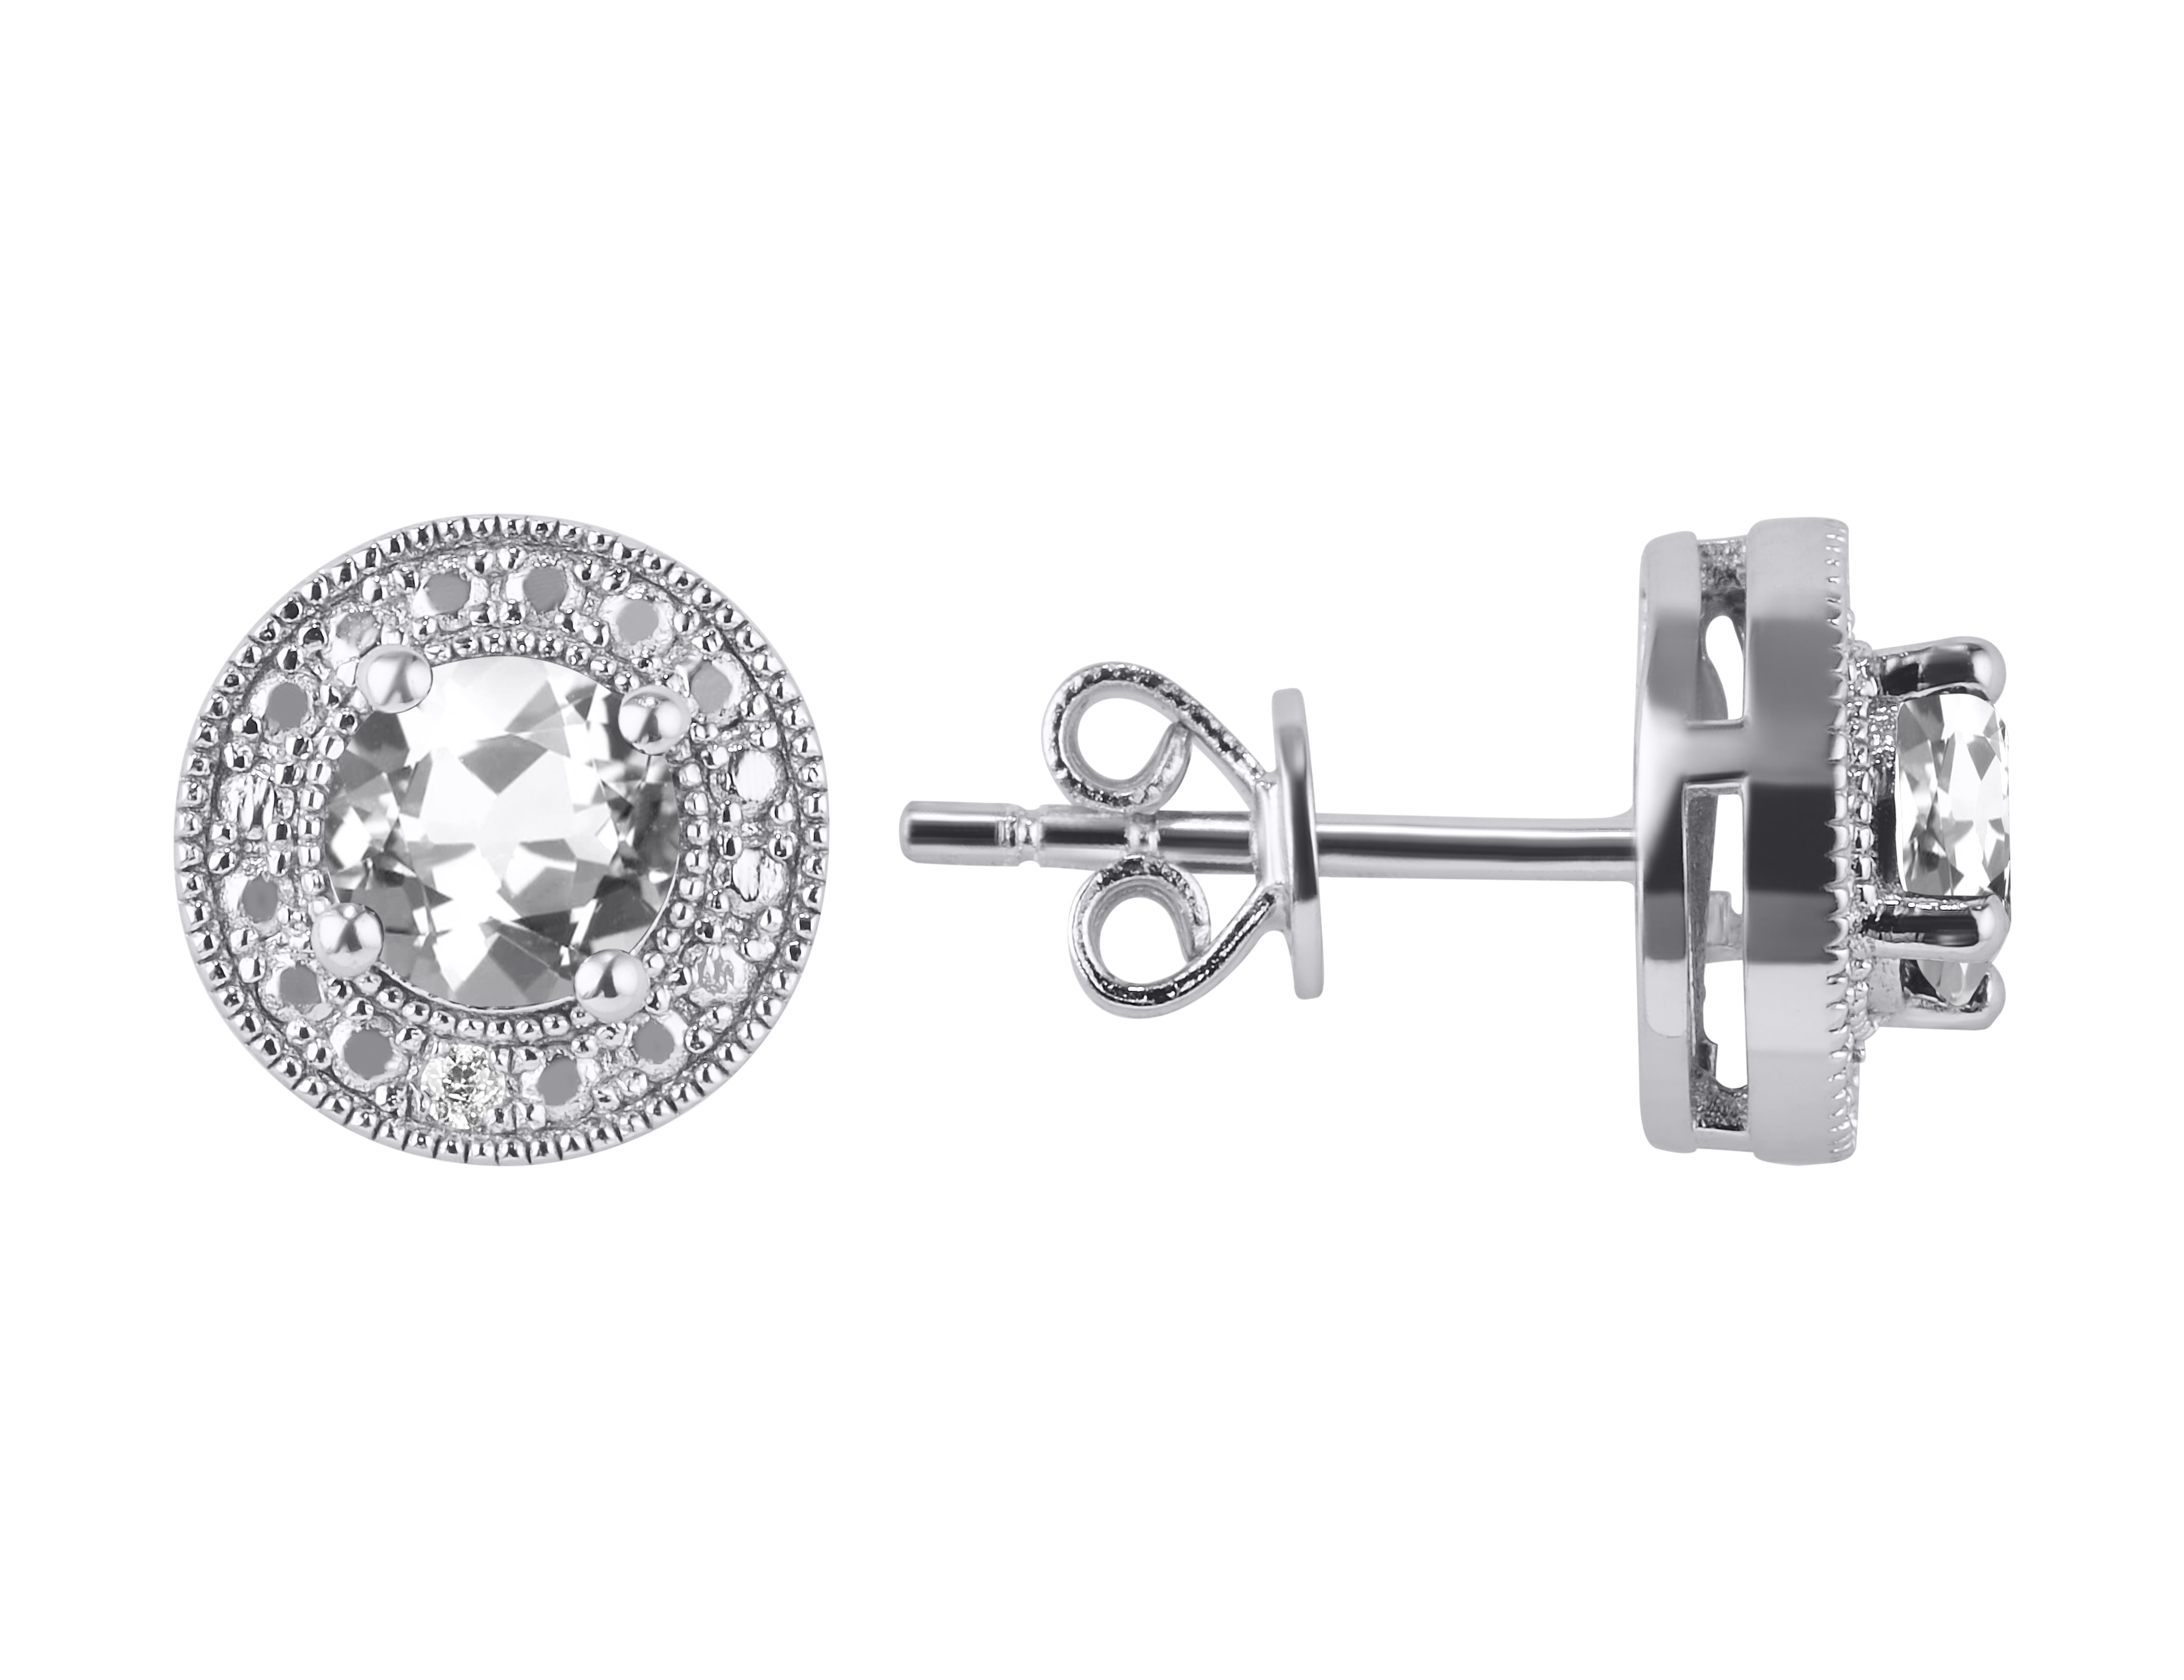 Details about   925 Sterling Silver Mystic Fire TOPAZ Drop Dangle Earrings Hook Ear Studs Gift